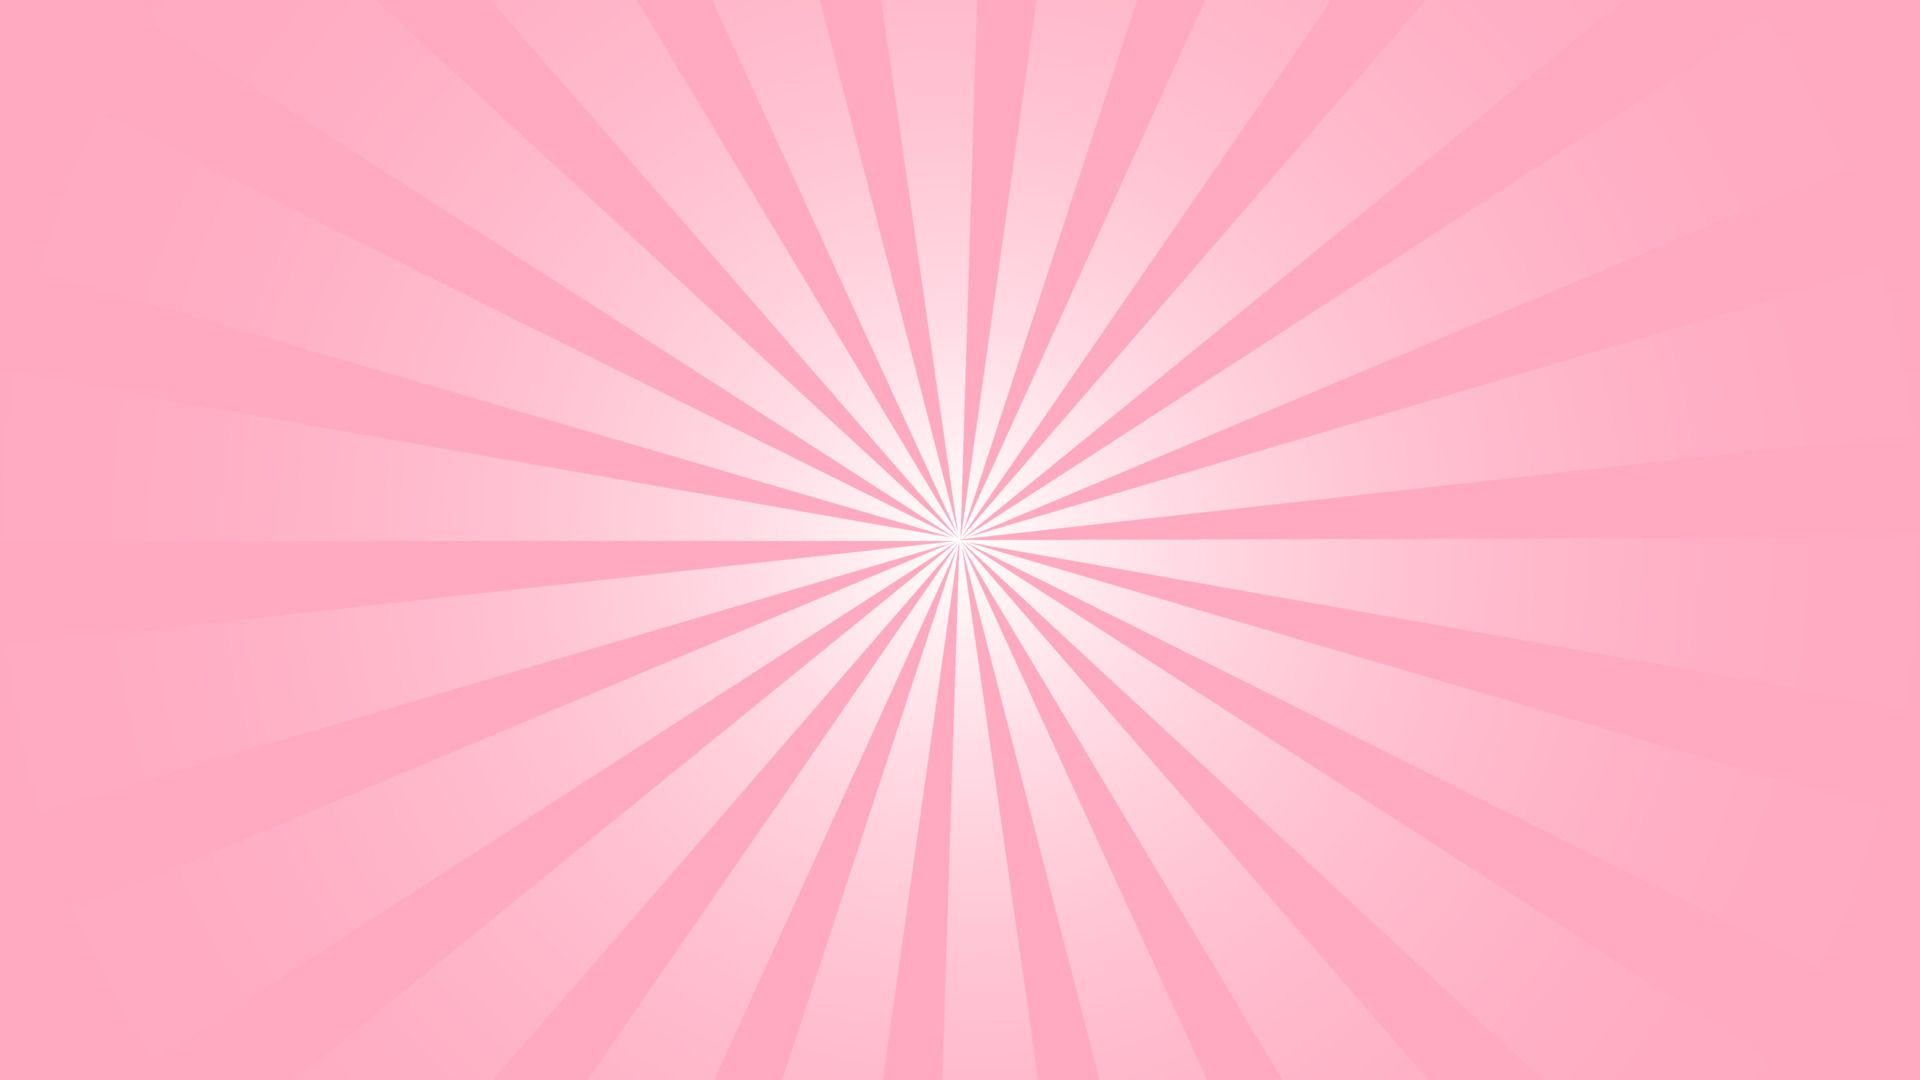 aesthetic soft pink spiral sunburst background illustration, perfect for backdrop, wallpaper, banner, postcard, background for your design